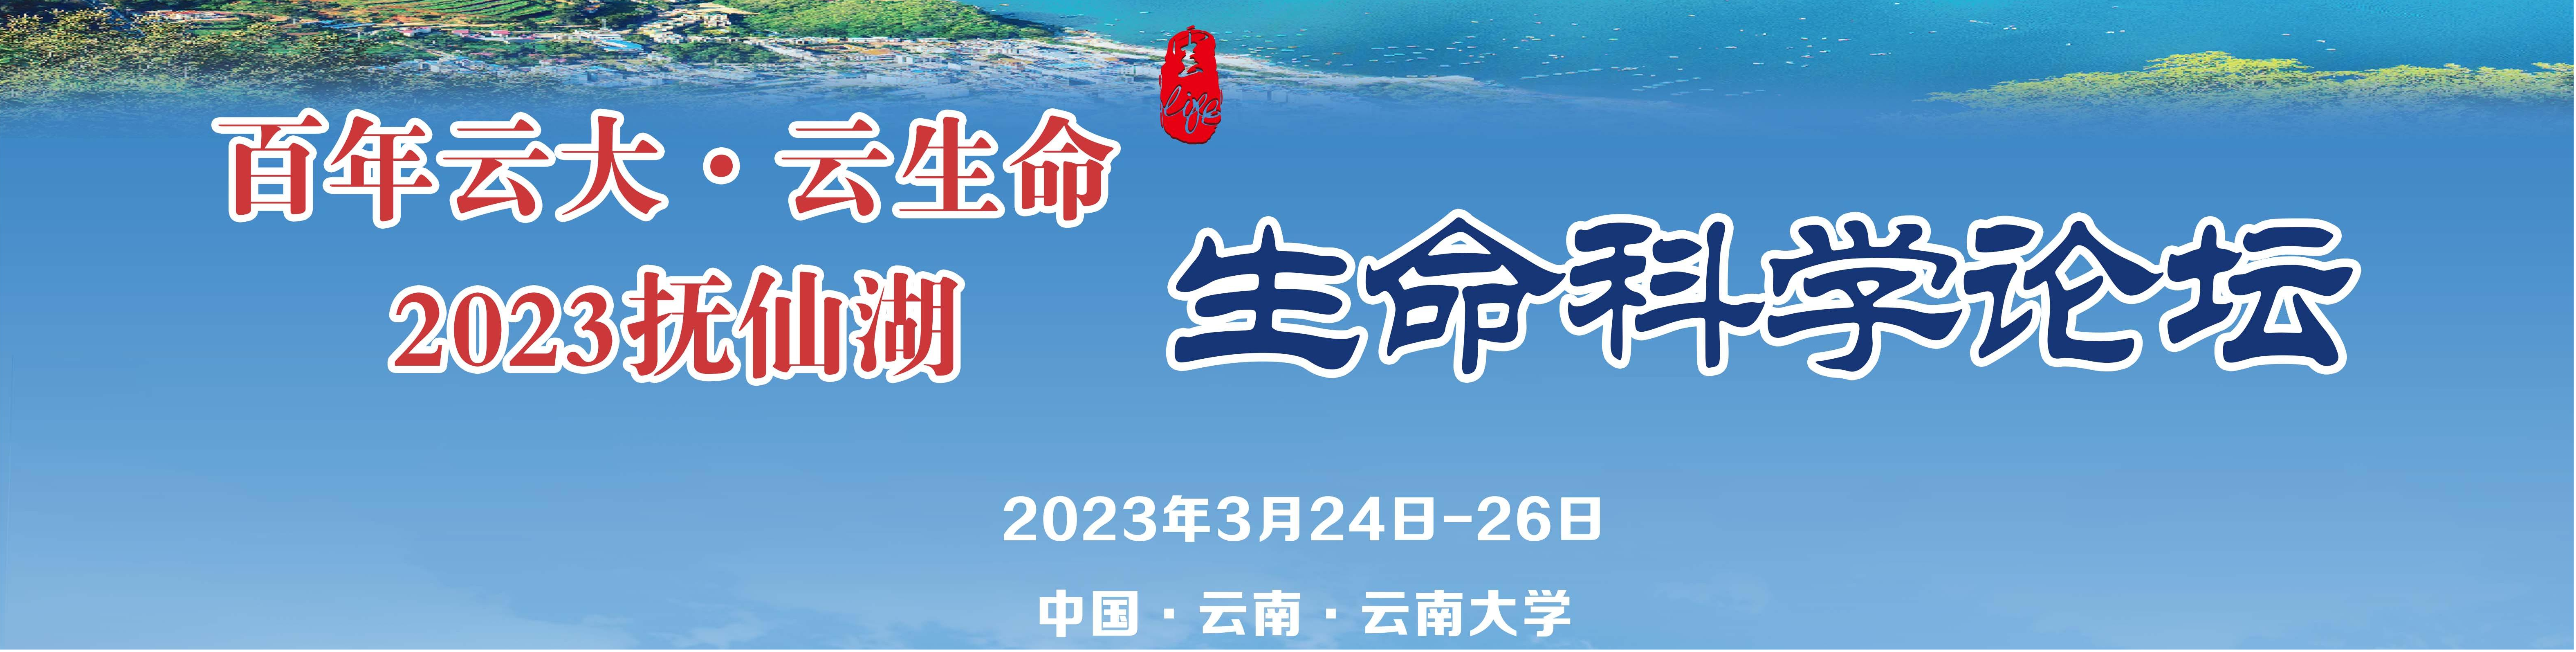 百年云大 云生命2023抚仙湖生命科学论坛